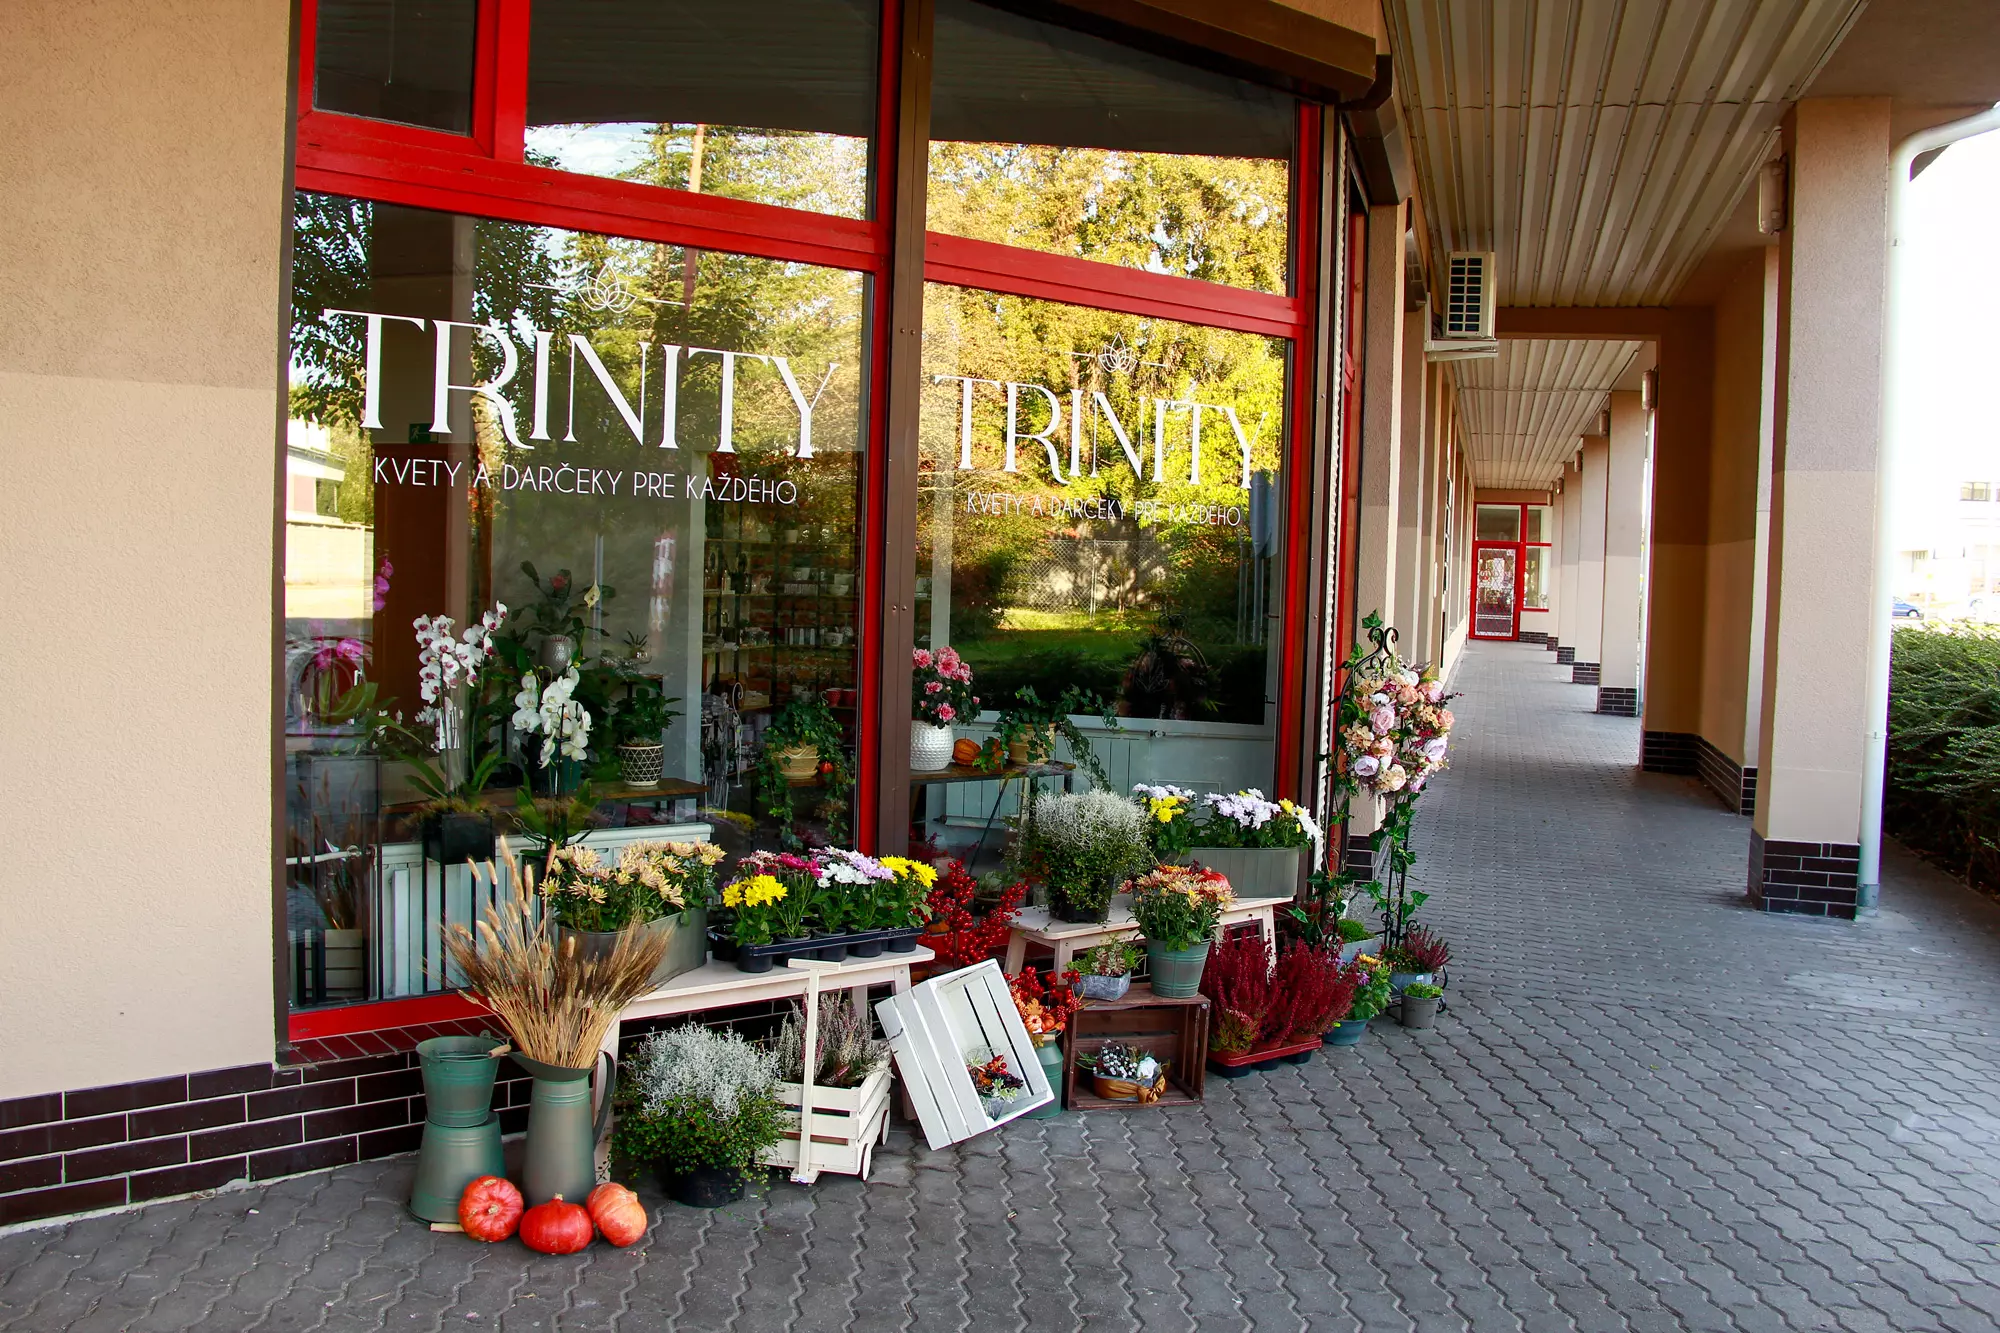 kvetinárstvo trinity, predajňa v podunajských biskupiciach v bratislave, možnosť objednania kvetov a rastlín online, kvetinárstvo v bratislave